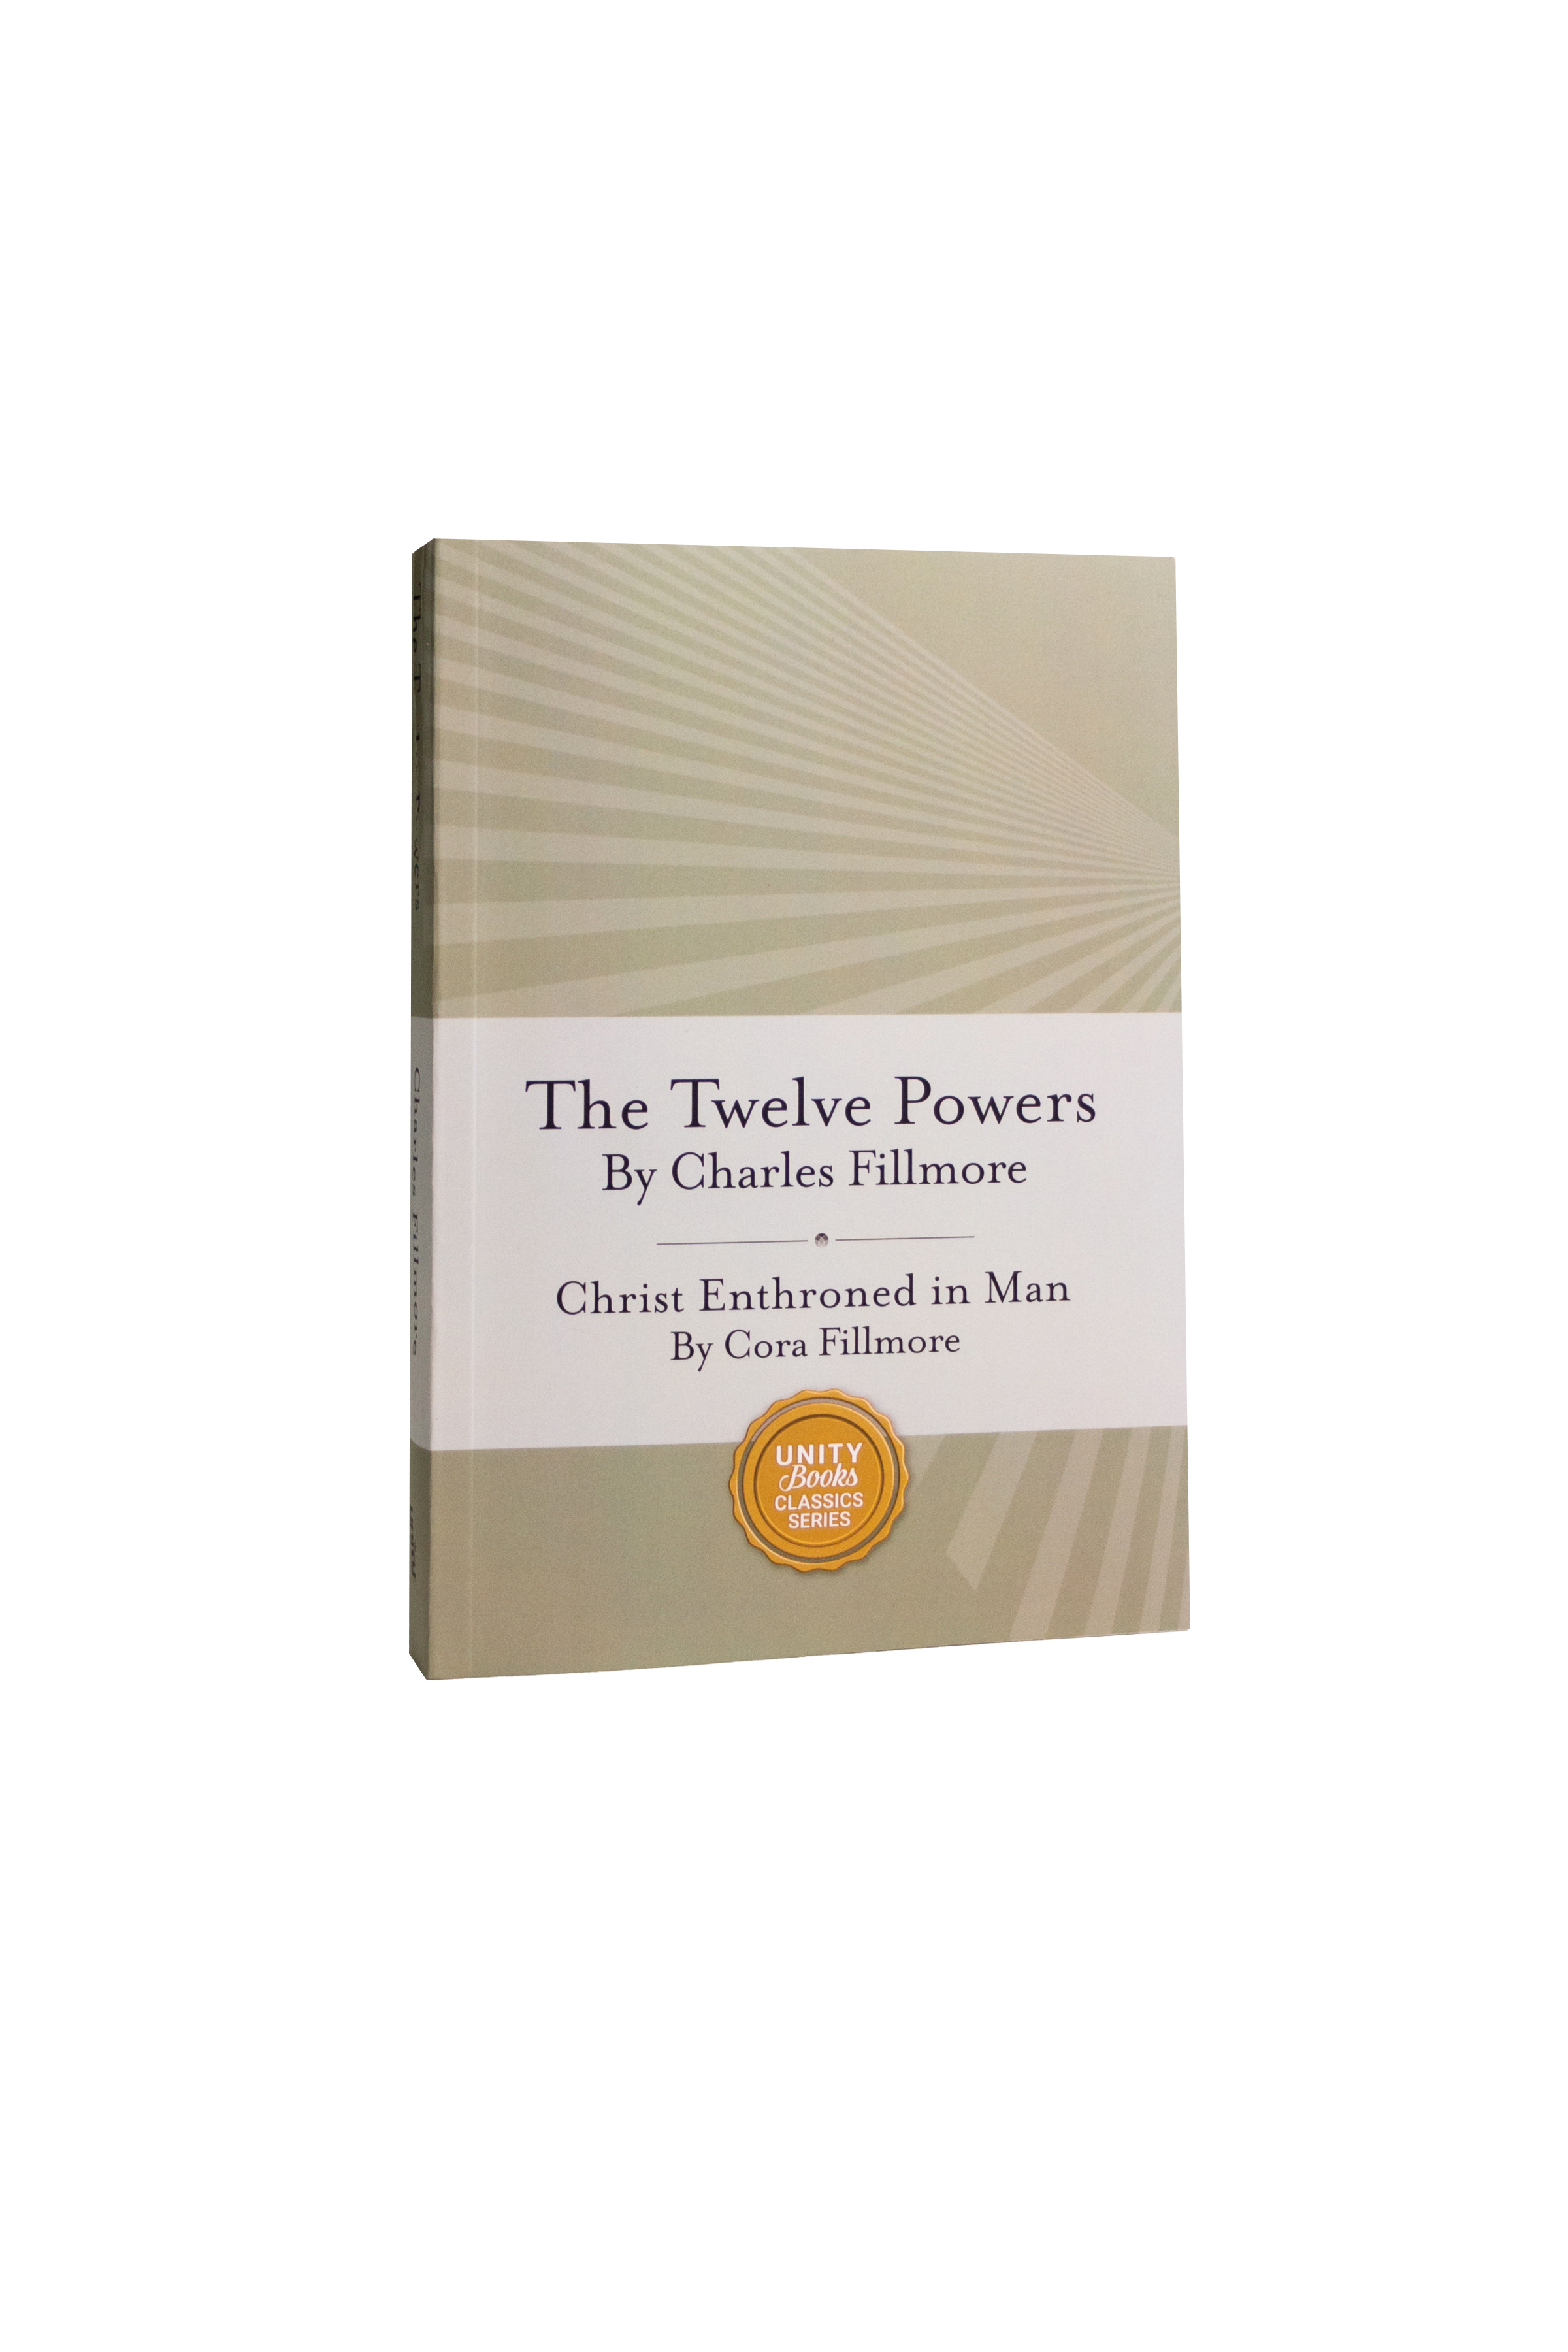 The Twelve Powers